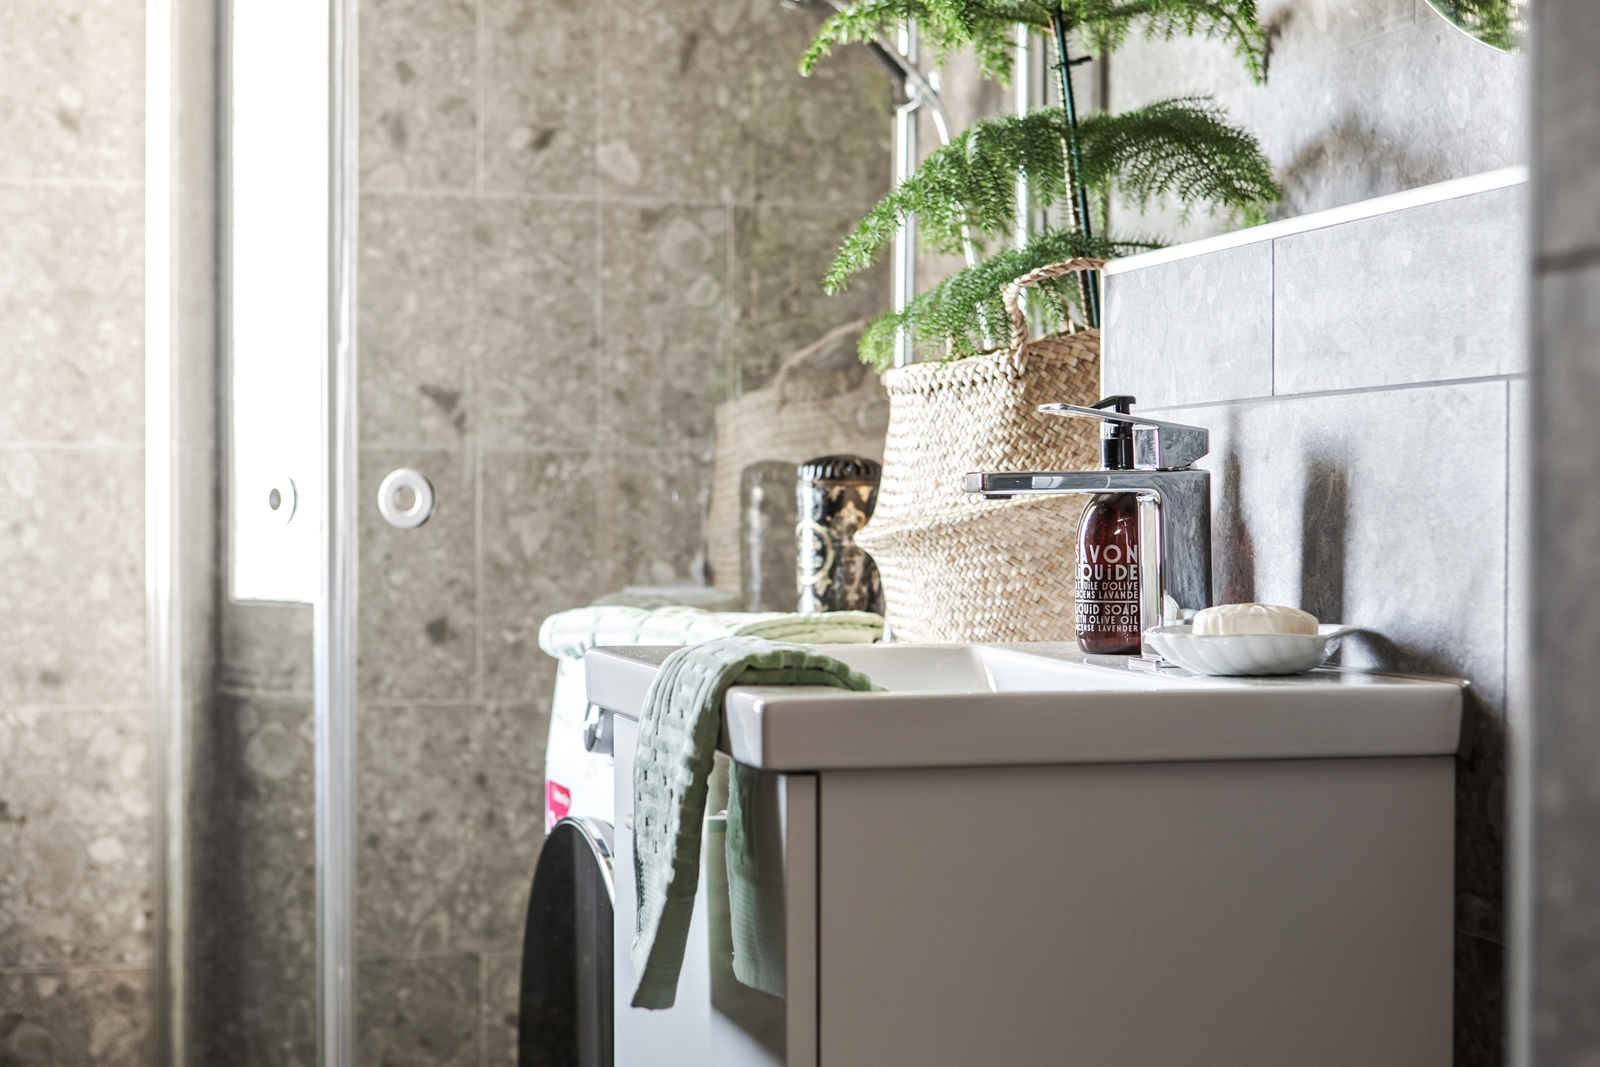 Badrum med grå marmorkakel, en modern handfat med tvål och handduk, och en korg med gröna växter som skapar en fridfull atmosfär.